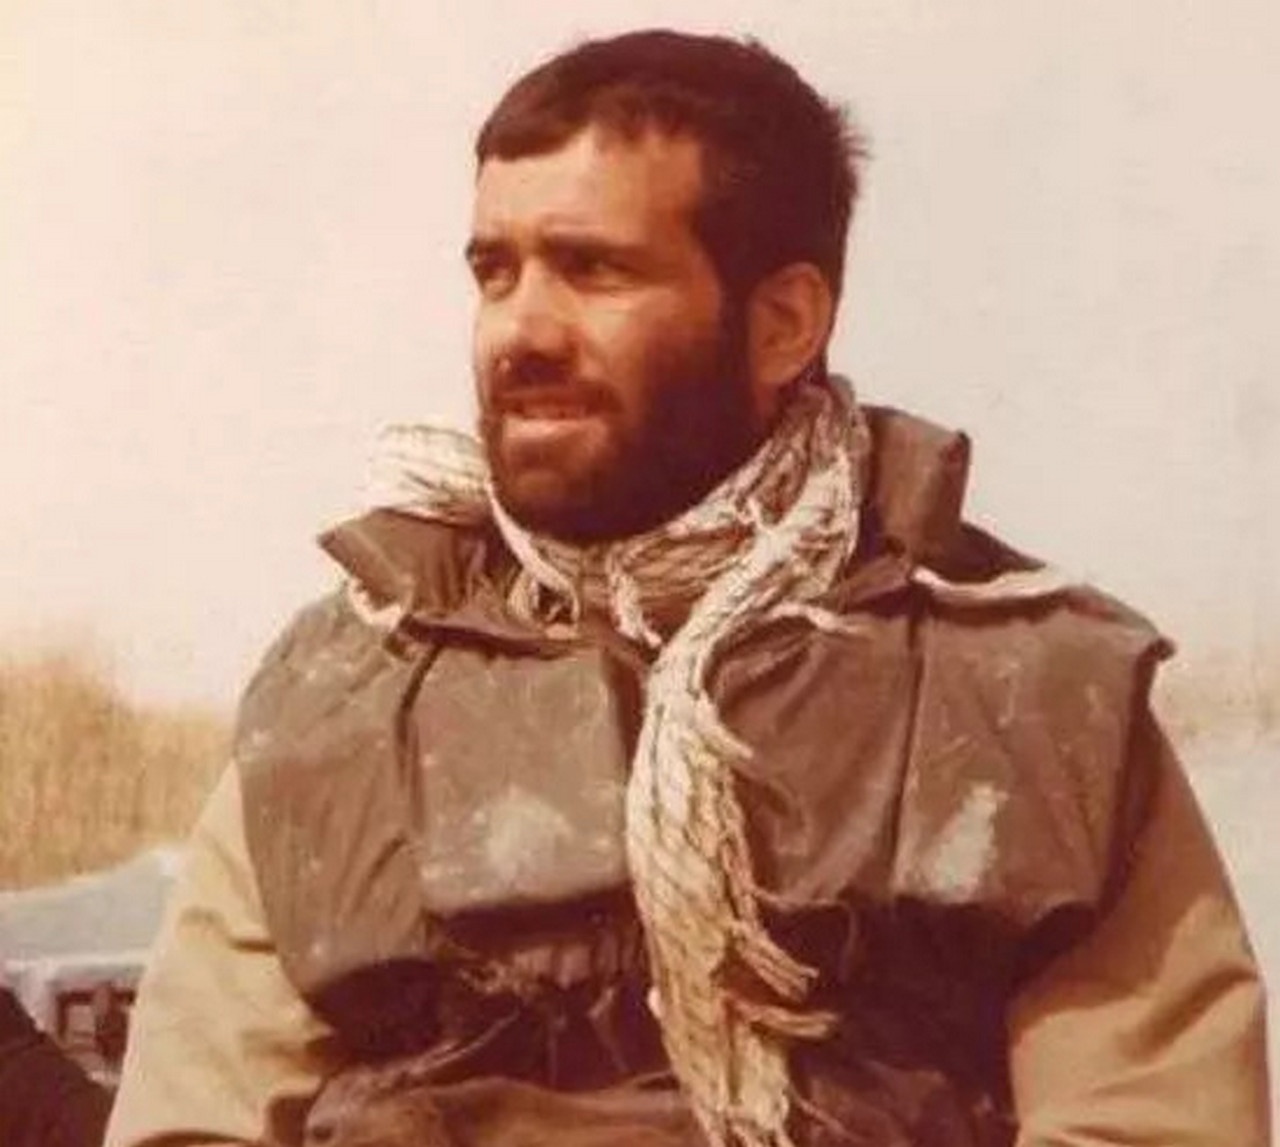 Масуд Пезешкиан во время ирано-иракской войны был военным врачом.(1980-1988).